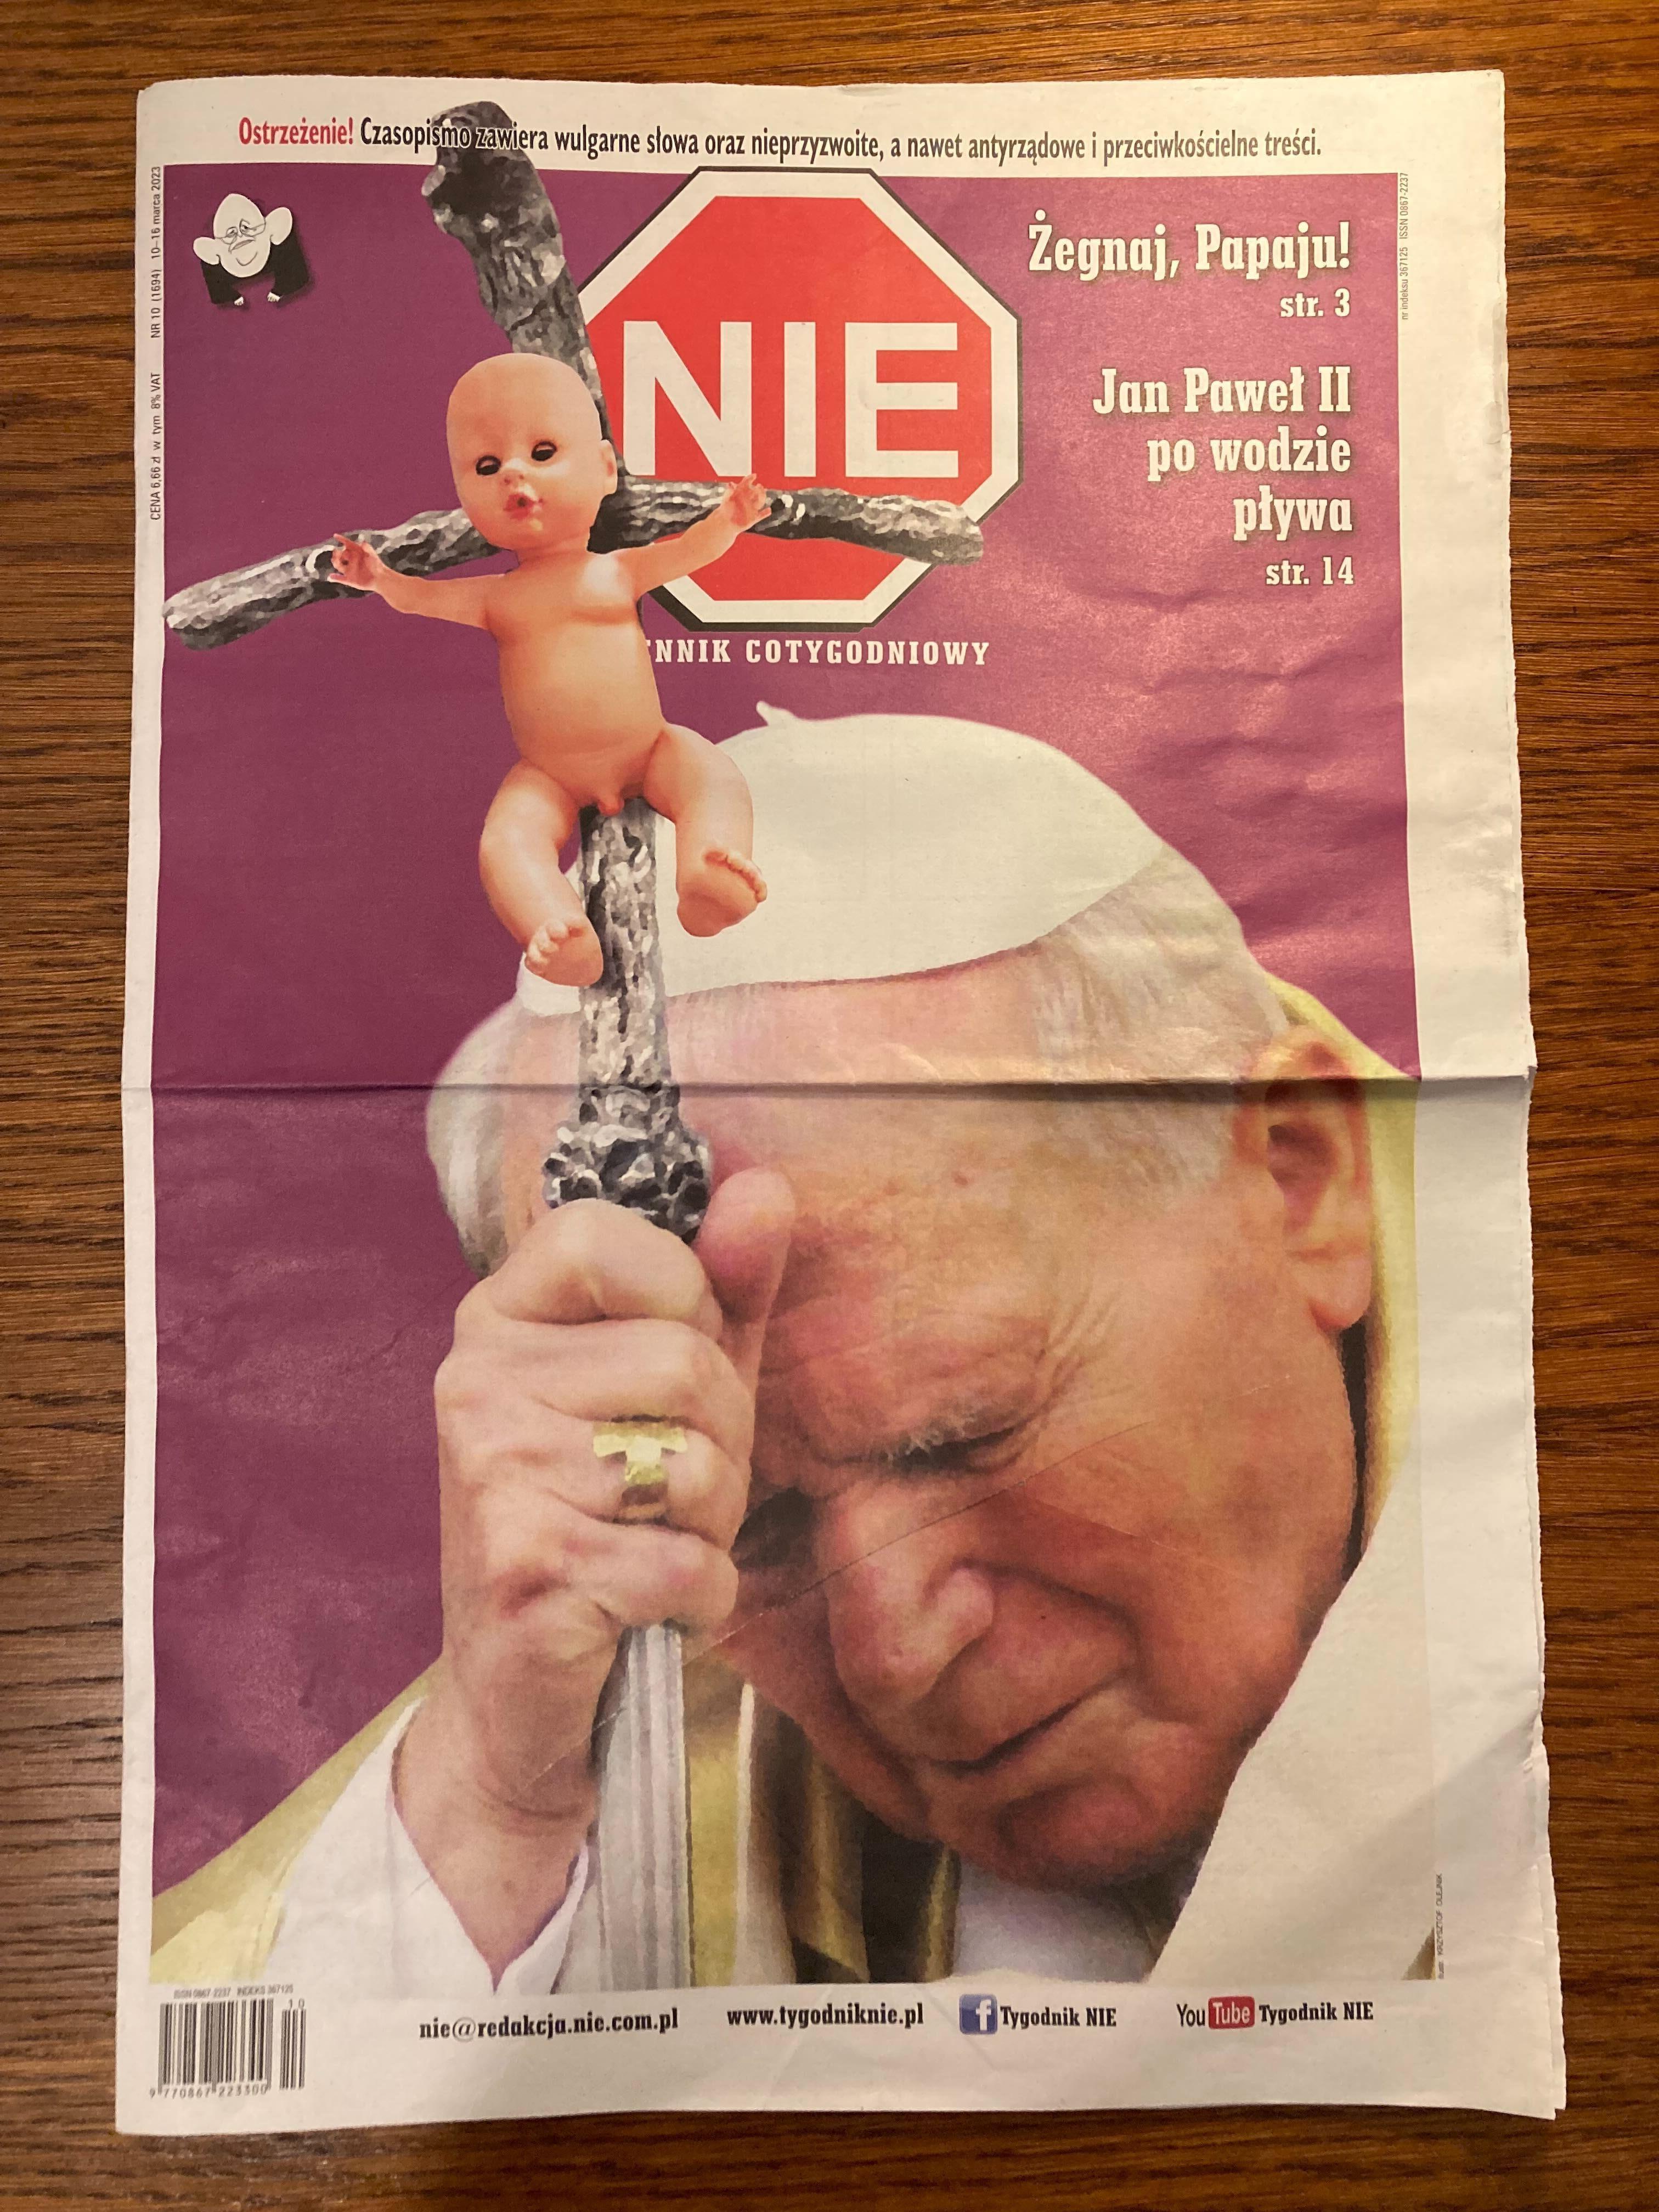 Okładka tygodnika "NIE" z Janem Pawłem II.